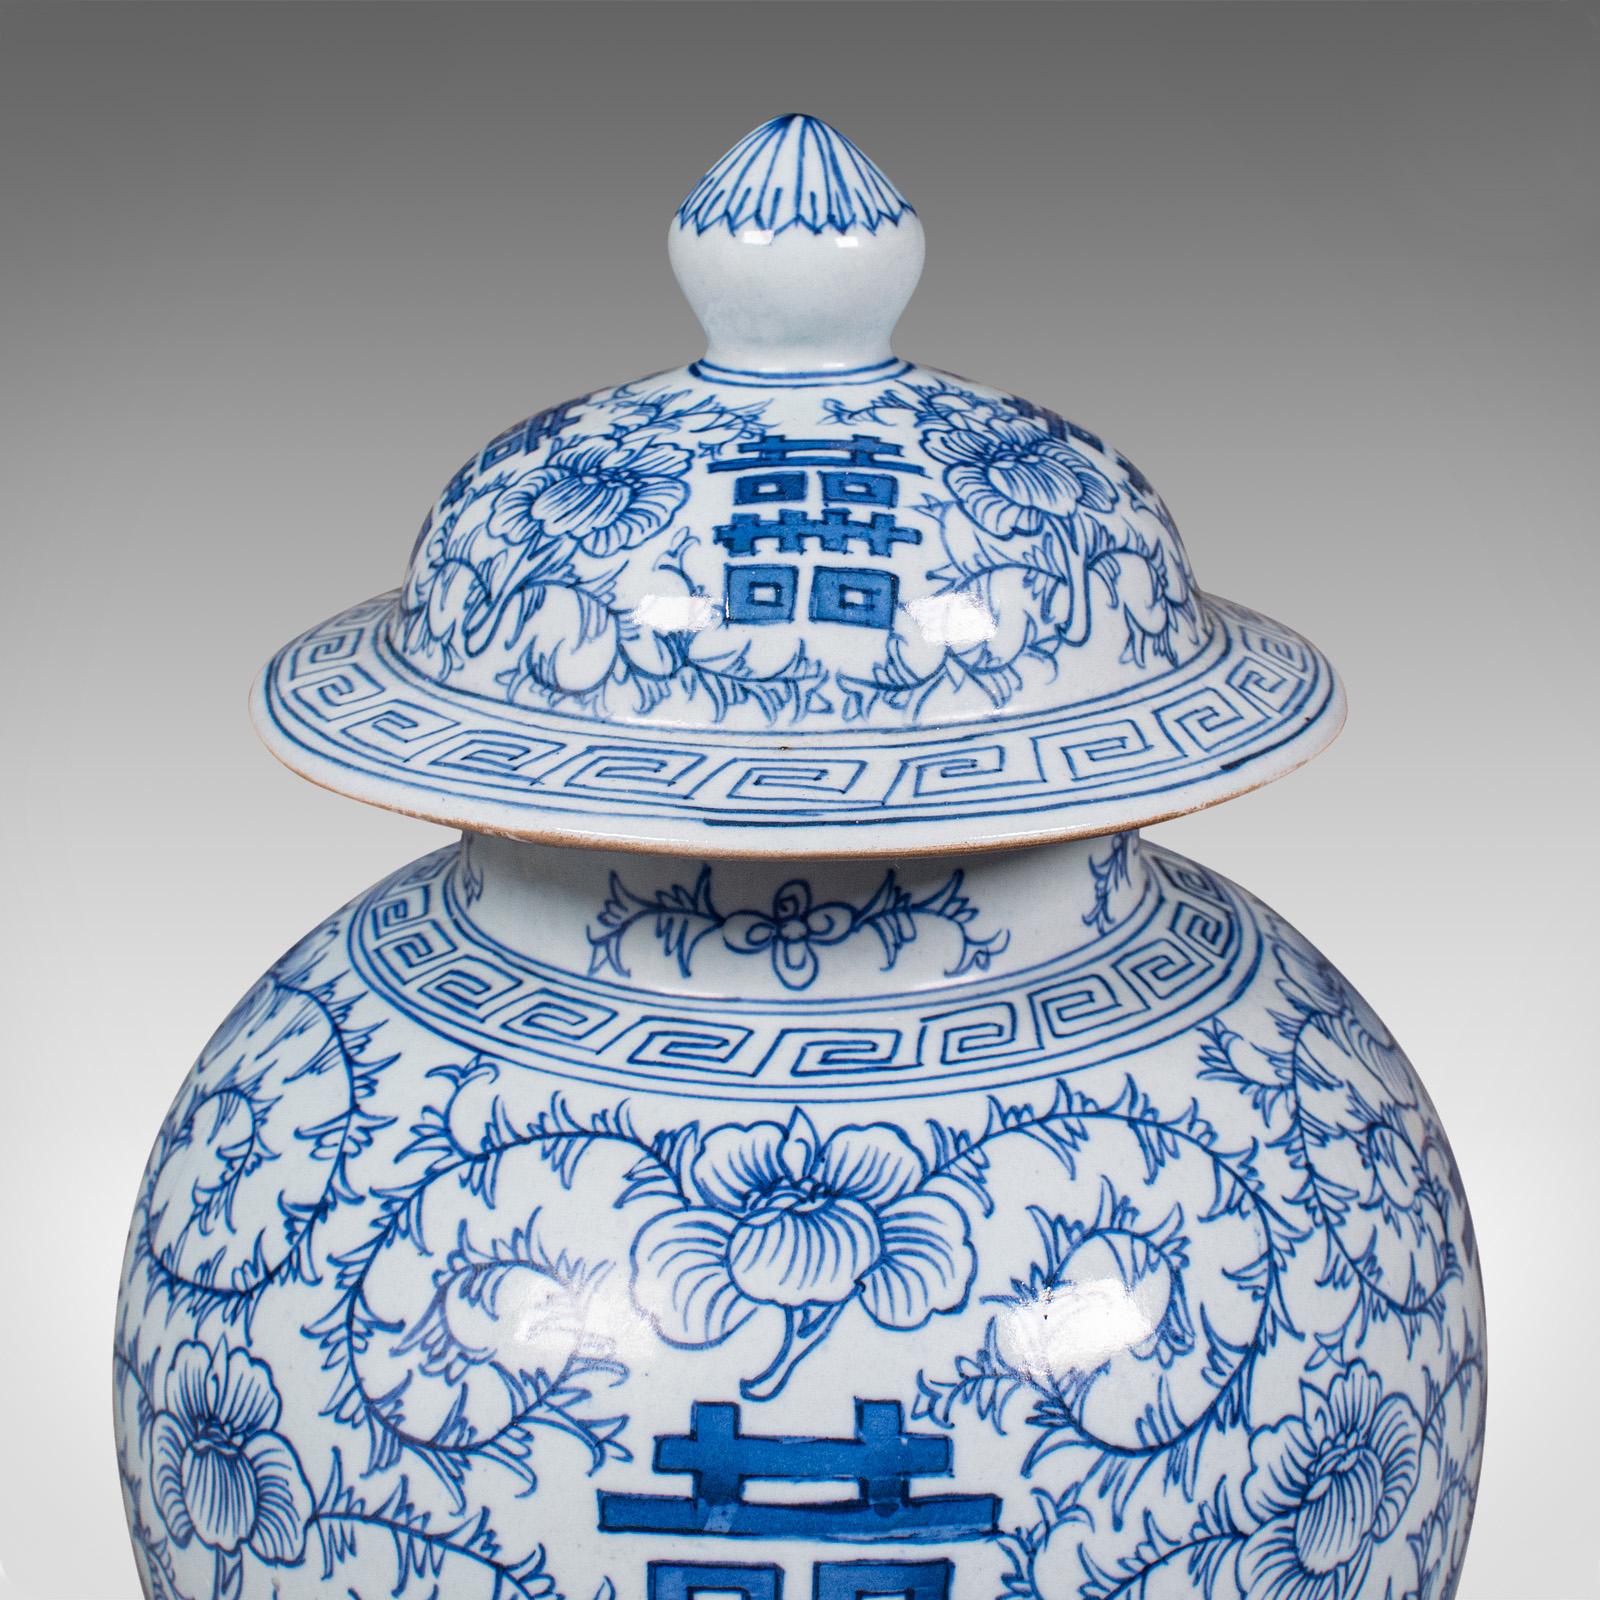 Vintage Decorative Flower Vase, Chinese, Ceramic, Urn, Spice Jar, Art Deco, 1930 For Sale 6